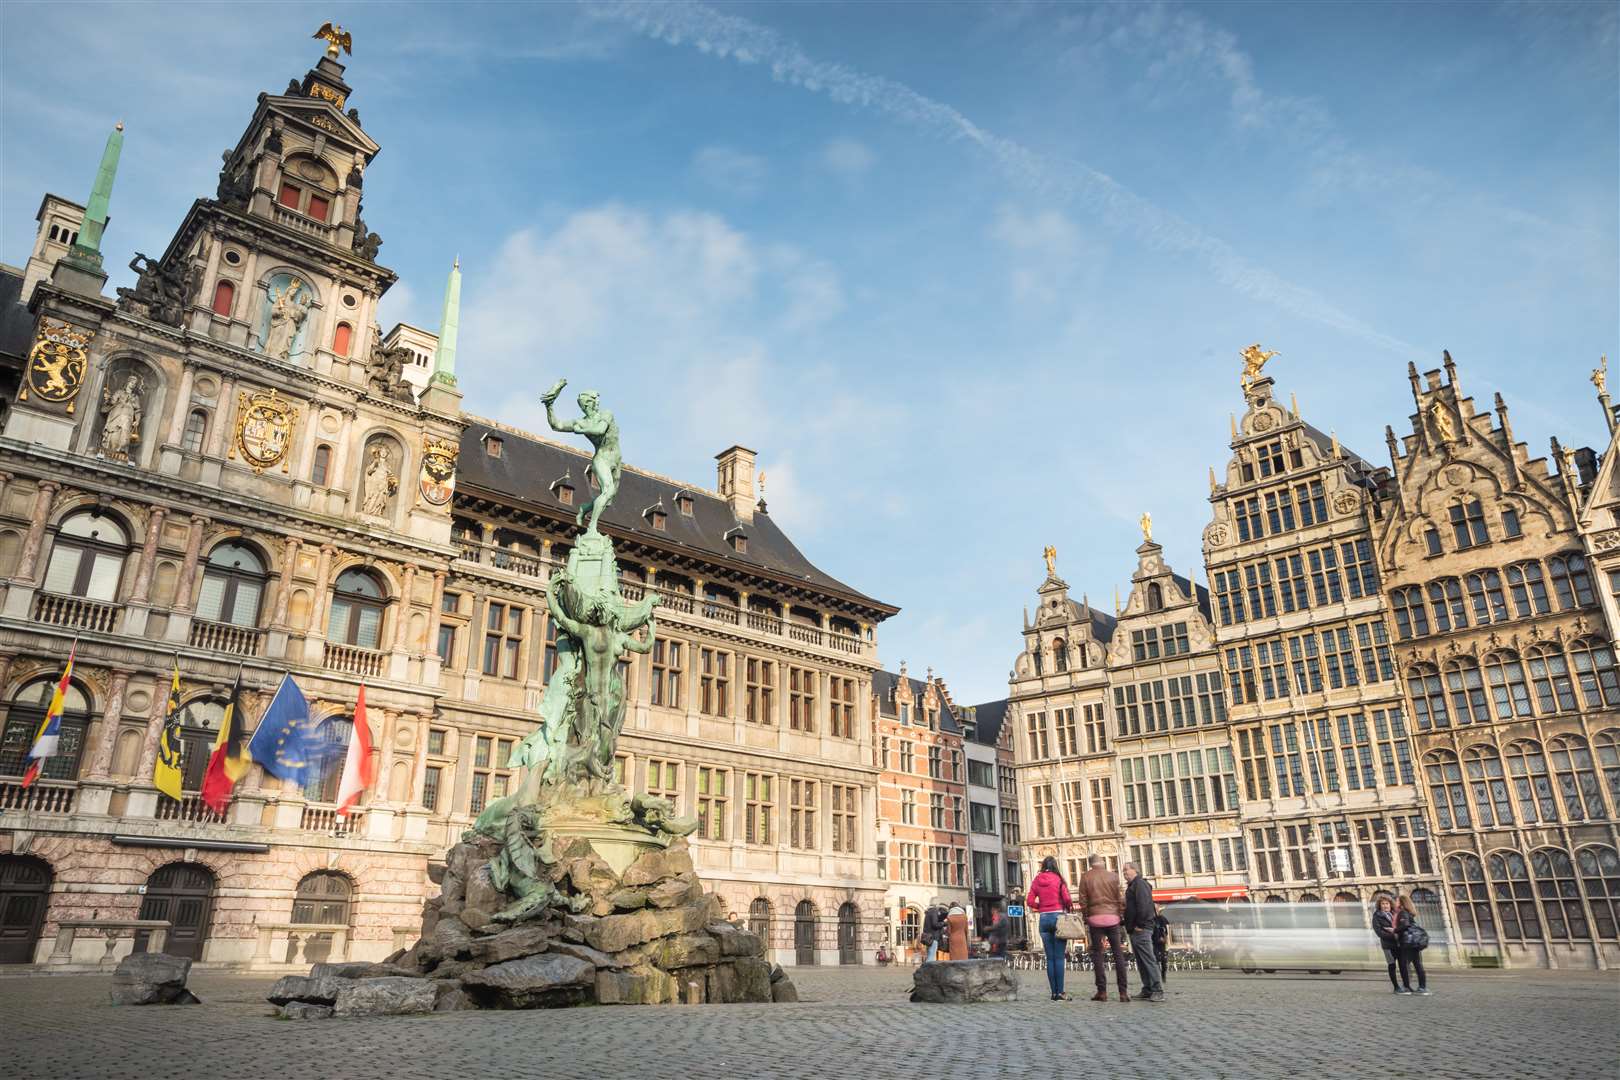 Grote Markt, Antwerp (3741720)